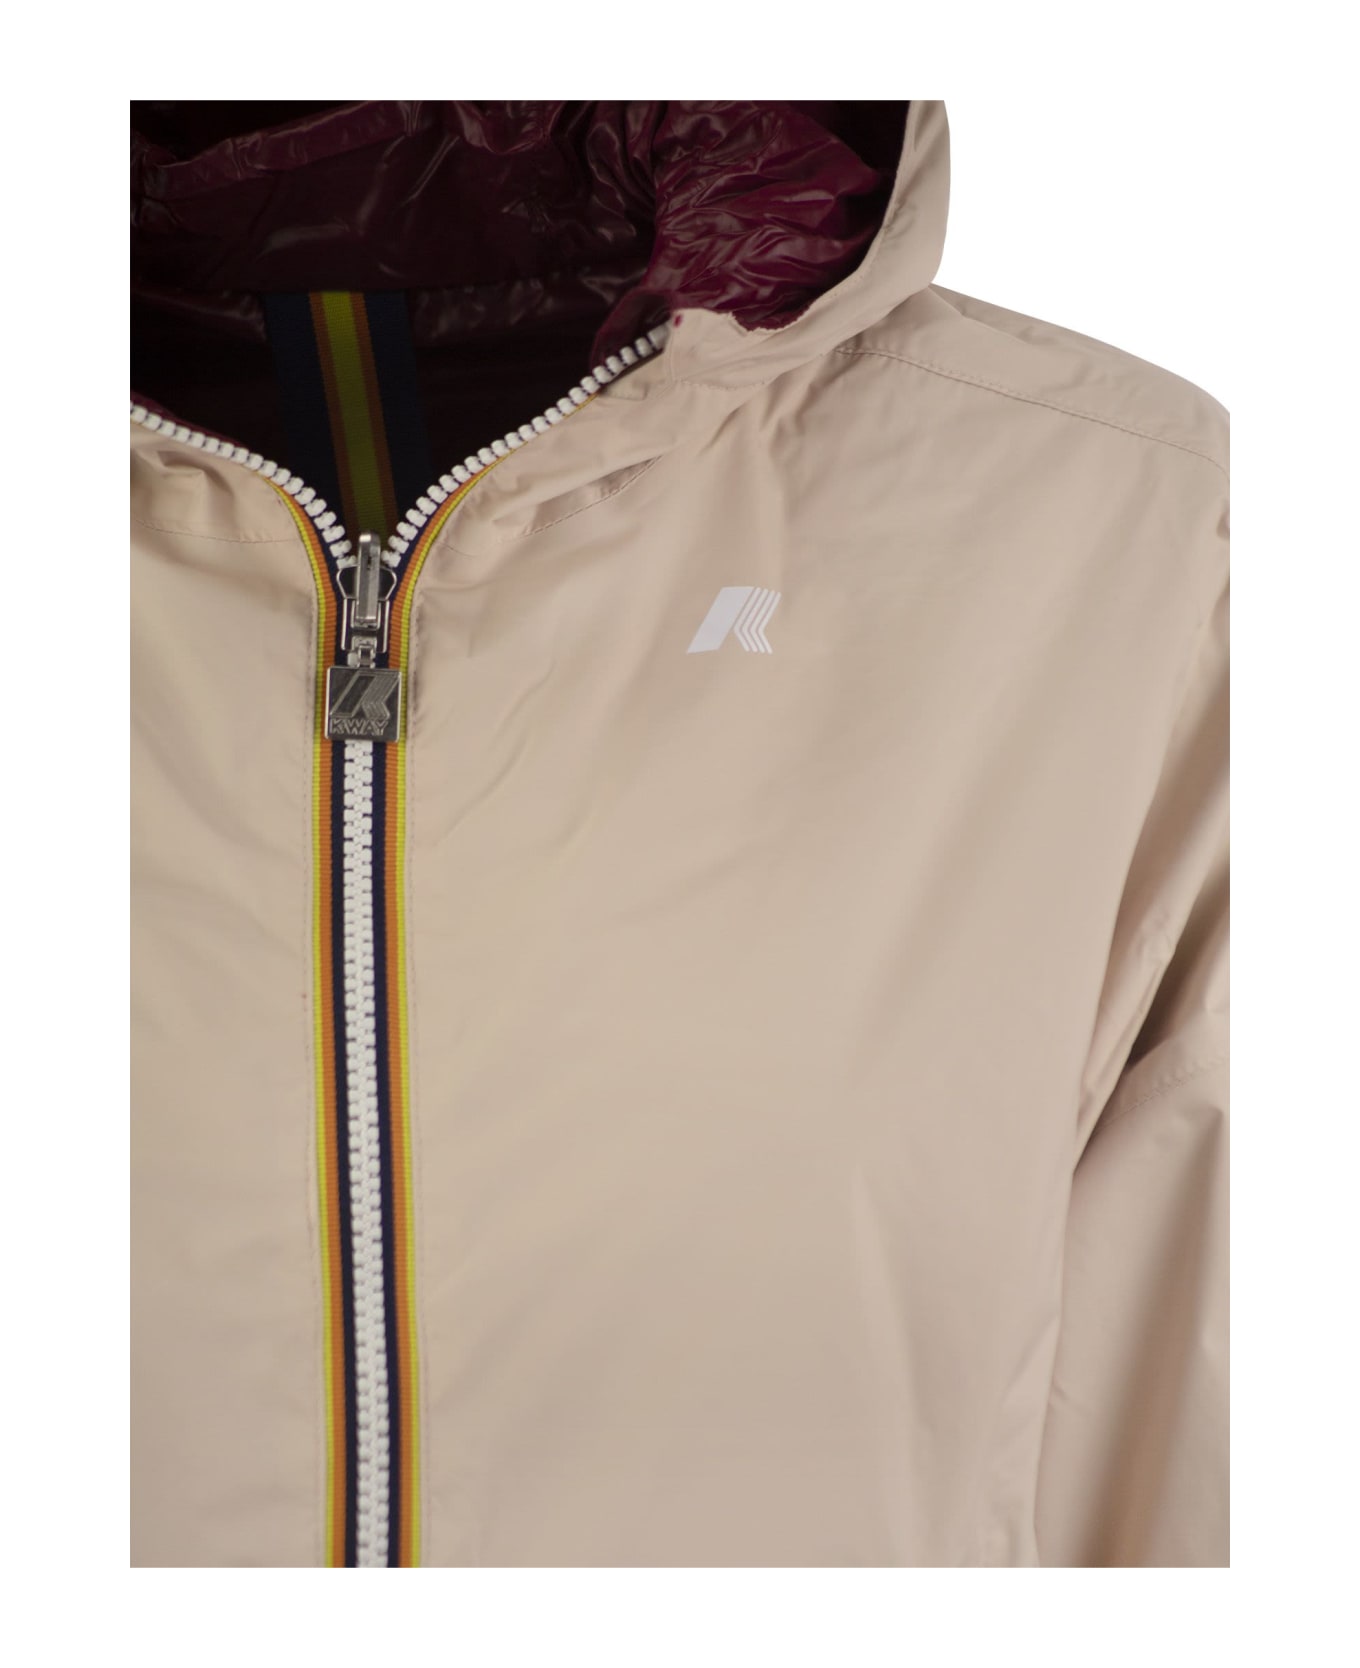 K-Way Laurette Plus - Reversible Hooded Jacket - Peach/bordeaux